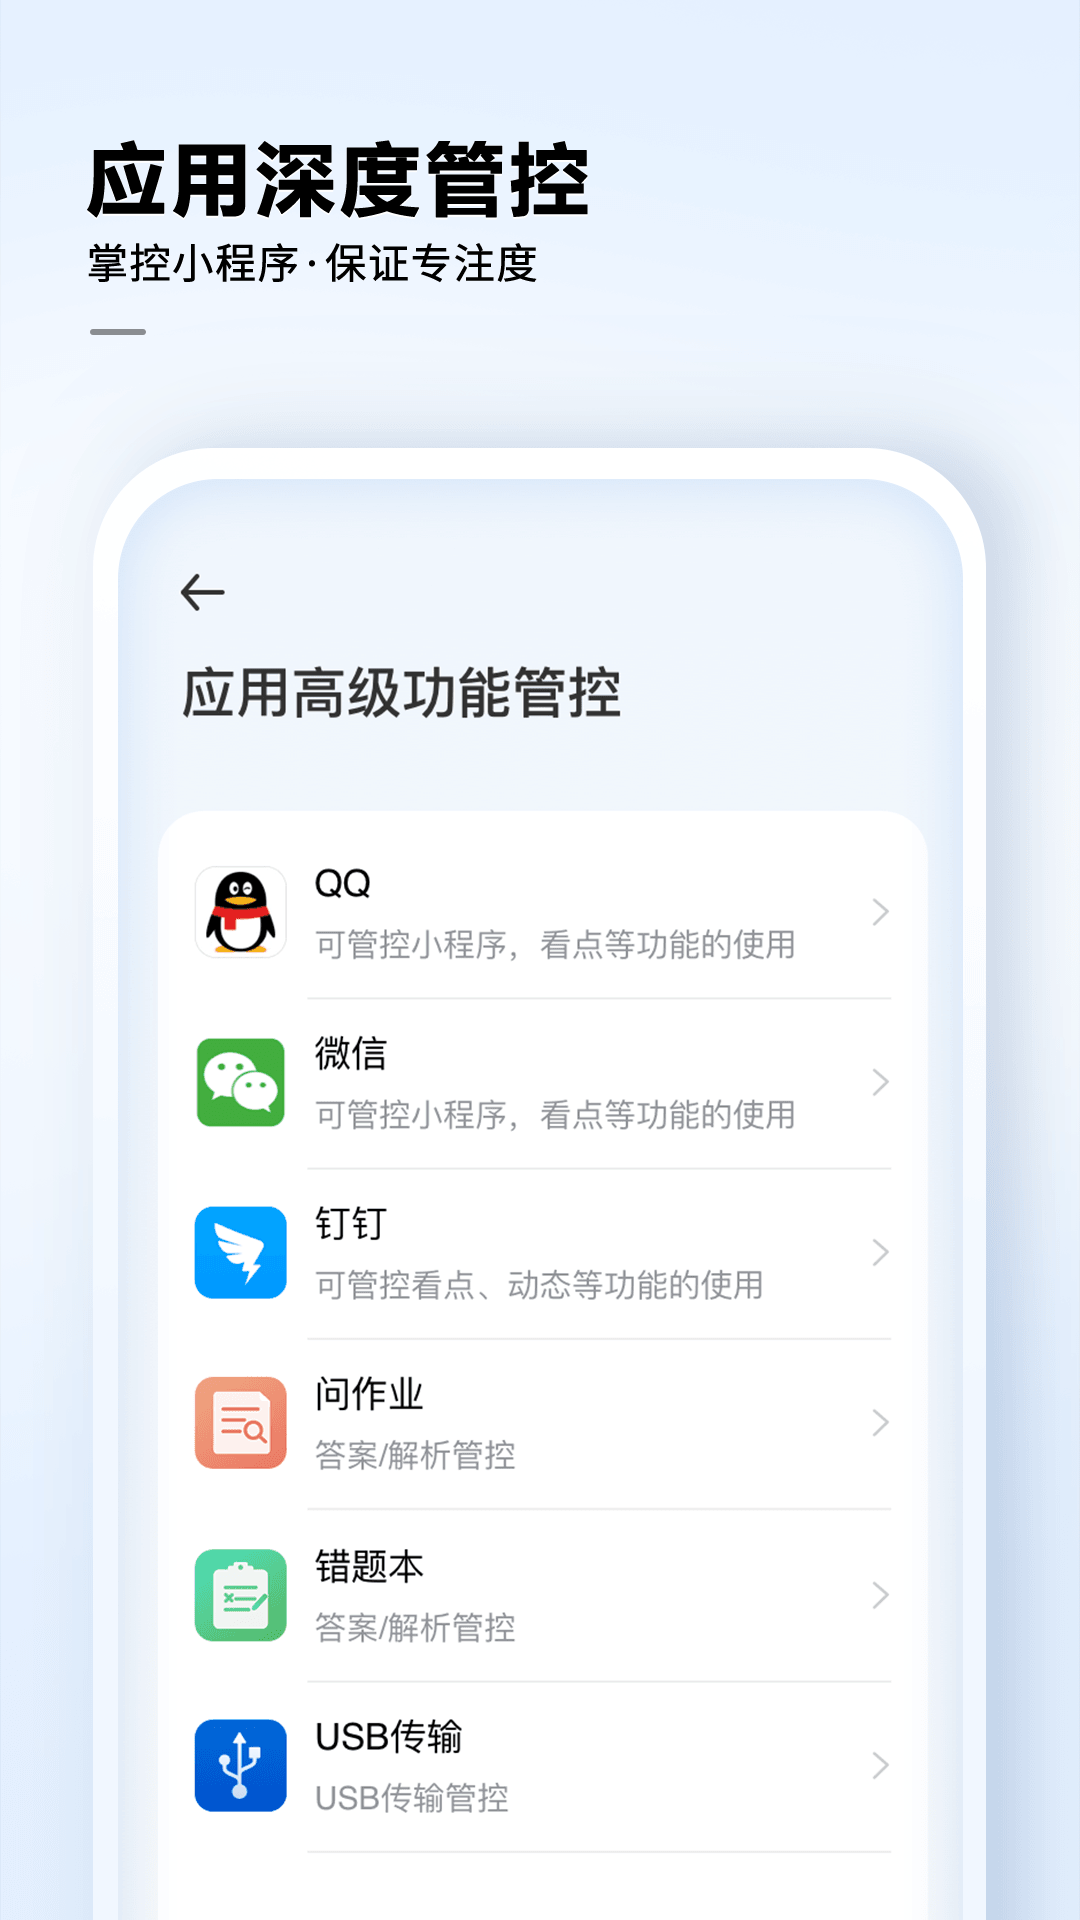 讯飞AI学app安卓版下载